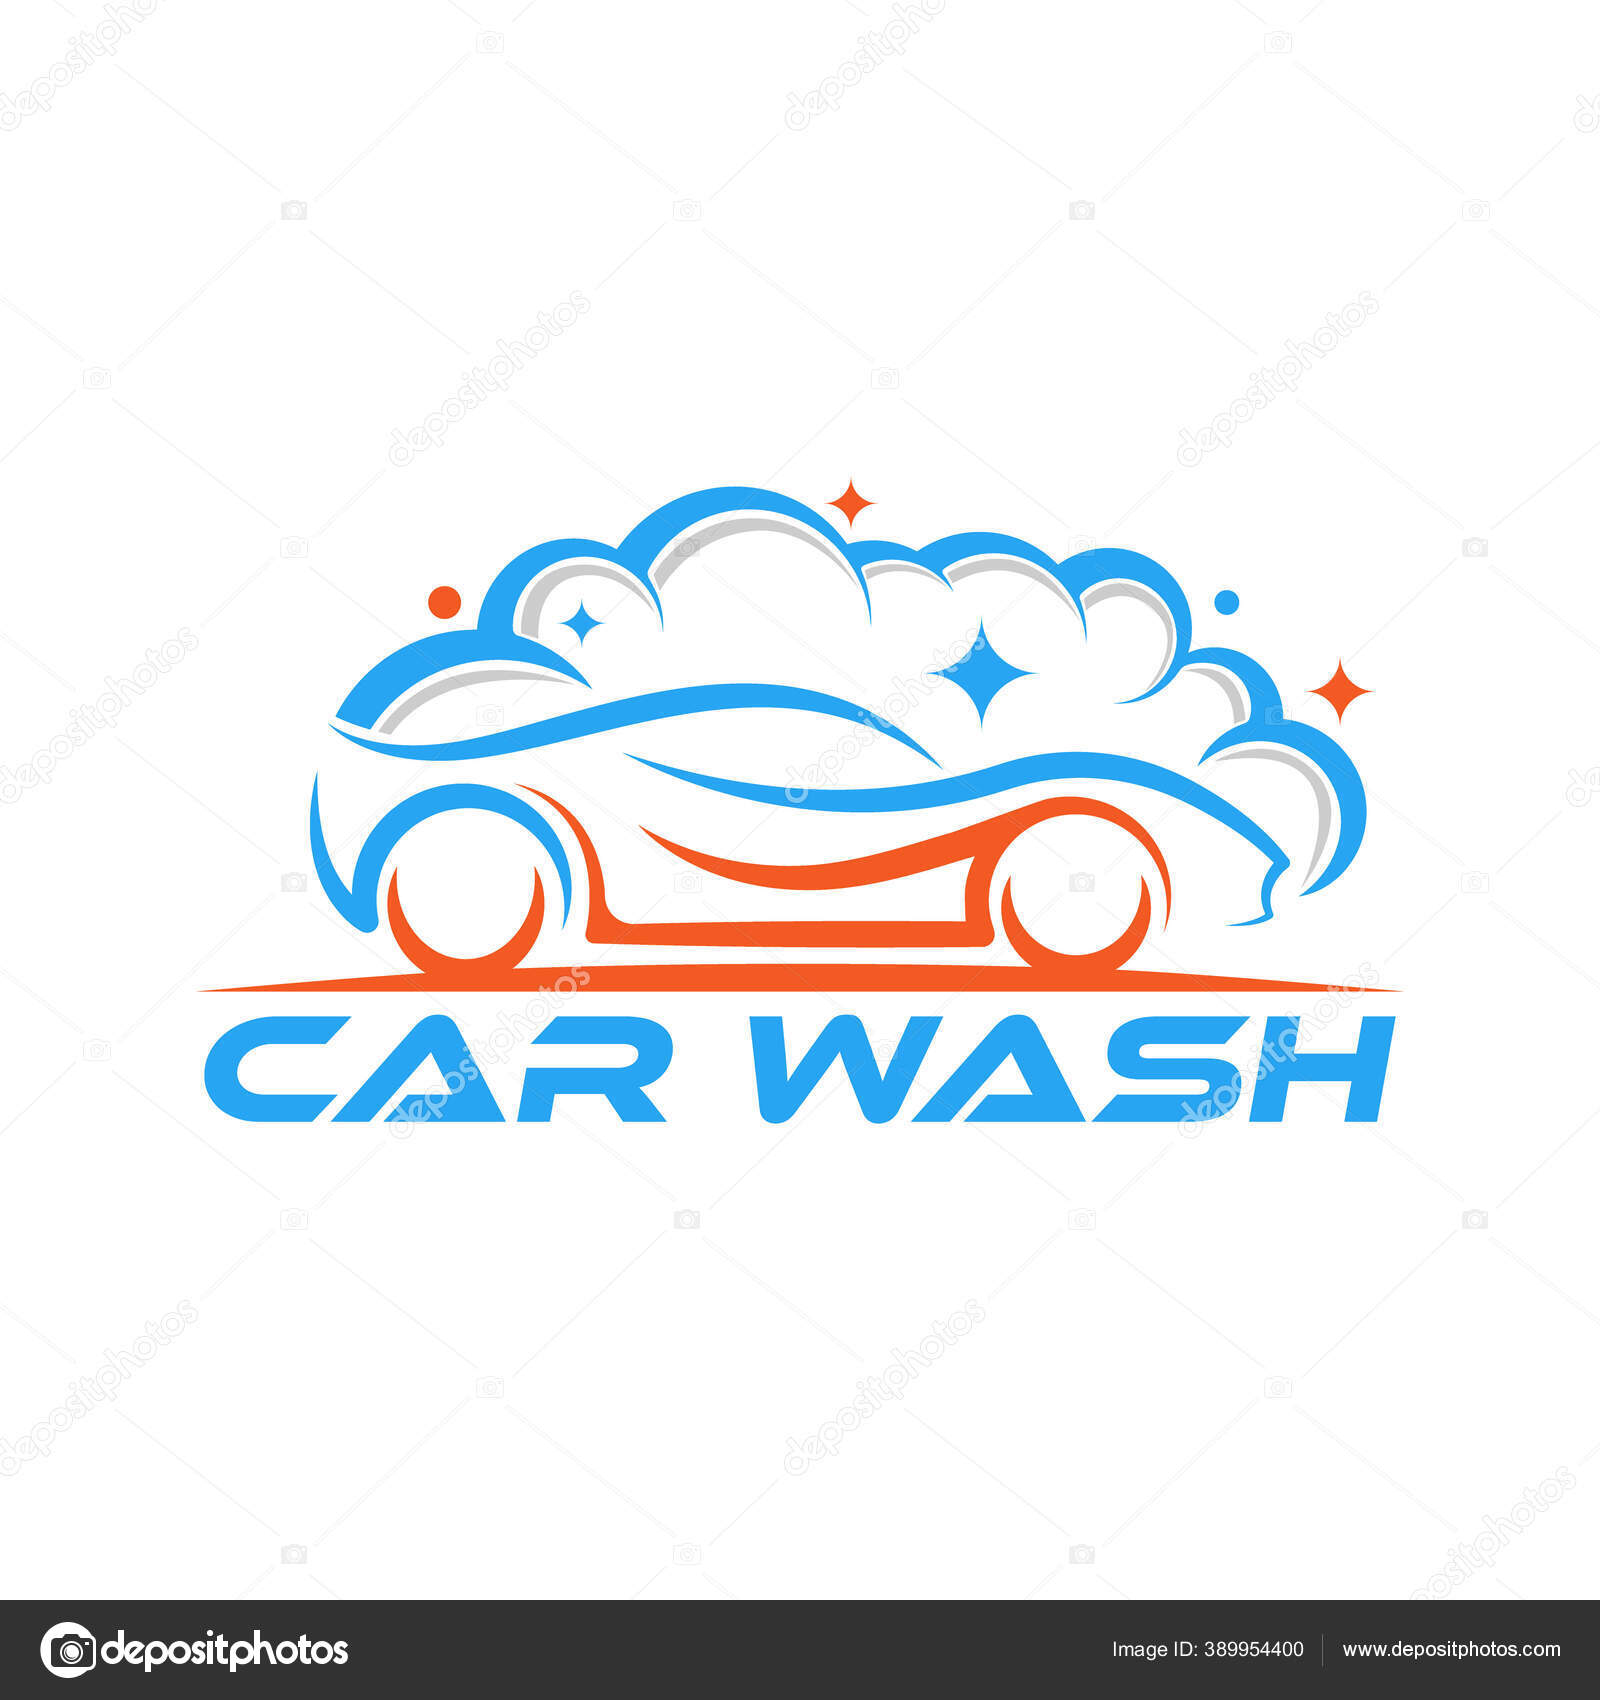 Carwash logo Template